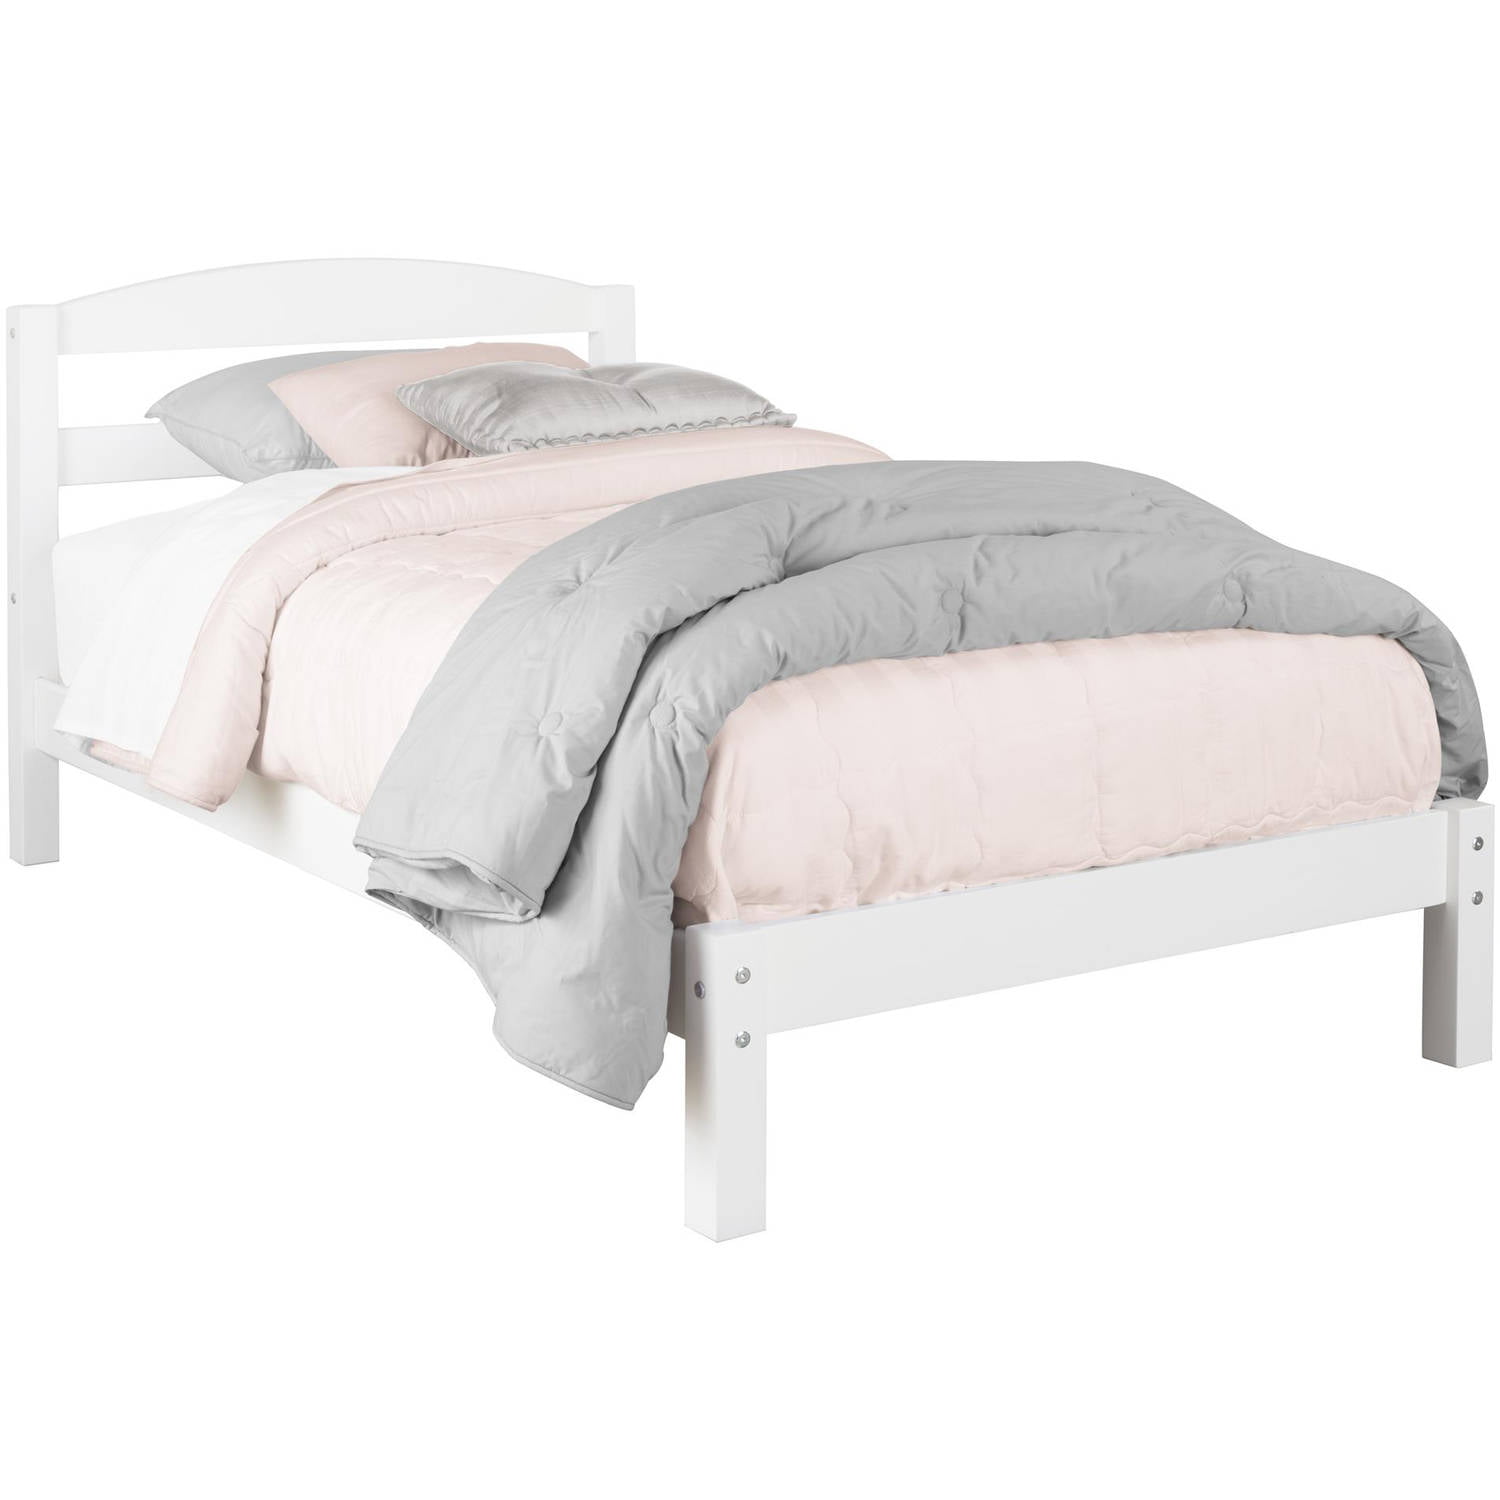 Twin Size Bed Frame White Kids Girls Single Bedroom Furniture Dorm Beds Children Ebay